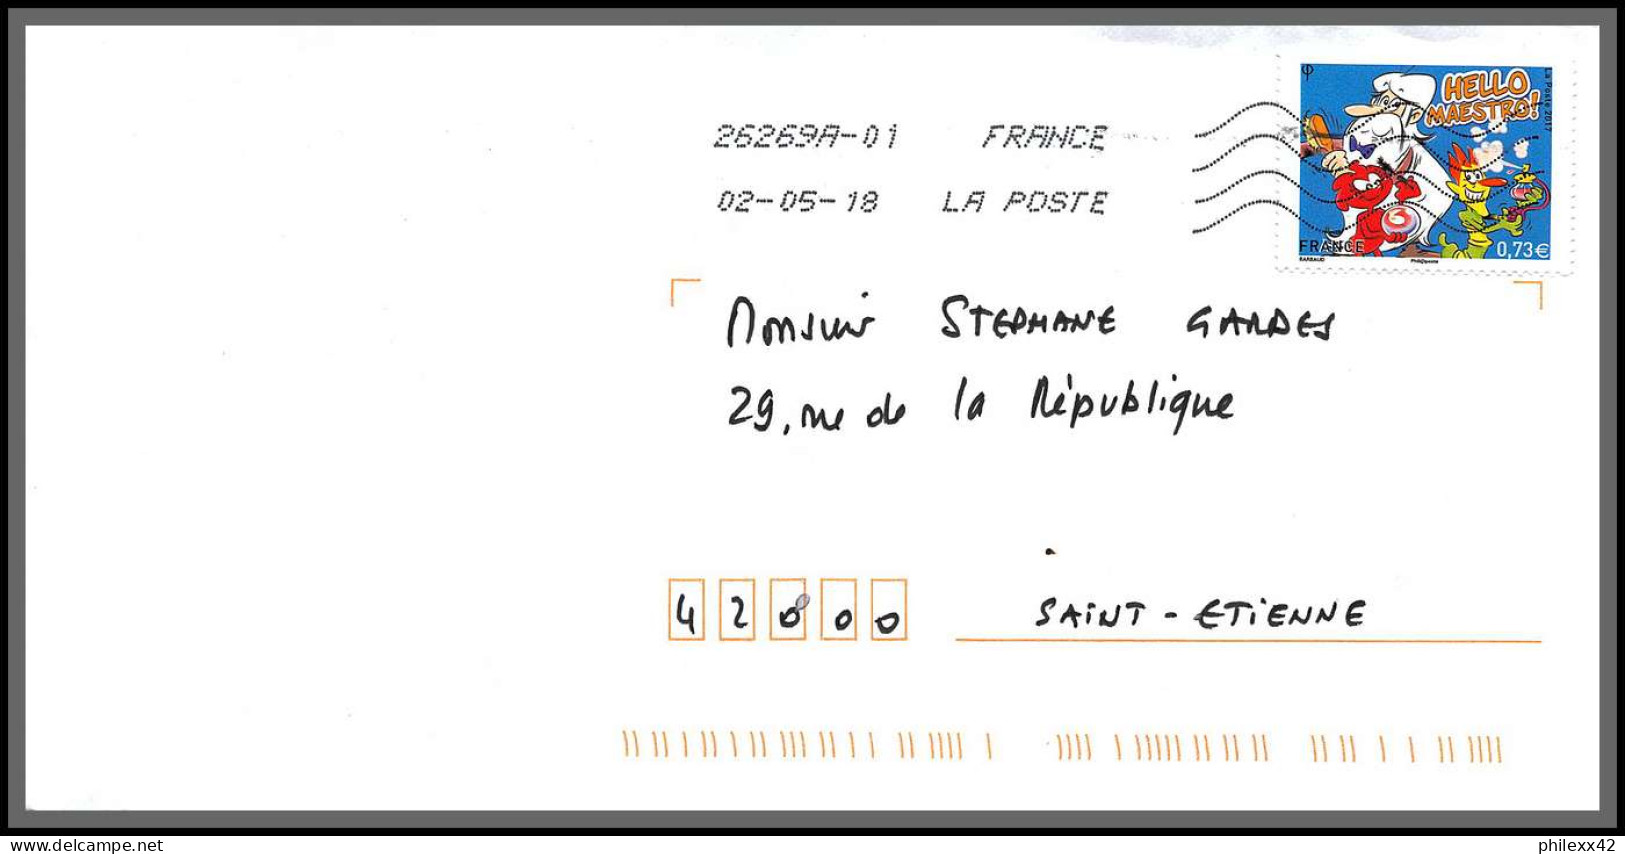 95892 - lot de 15 courriers lettres enveloppes de l'année 2018 divers affranchissements en EUROS